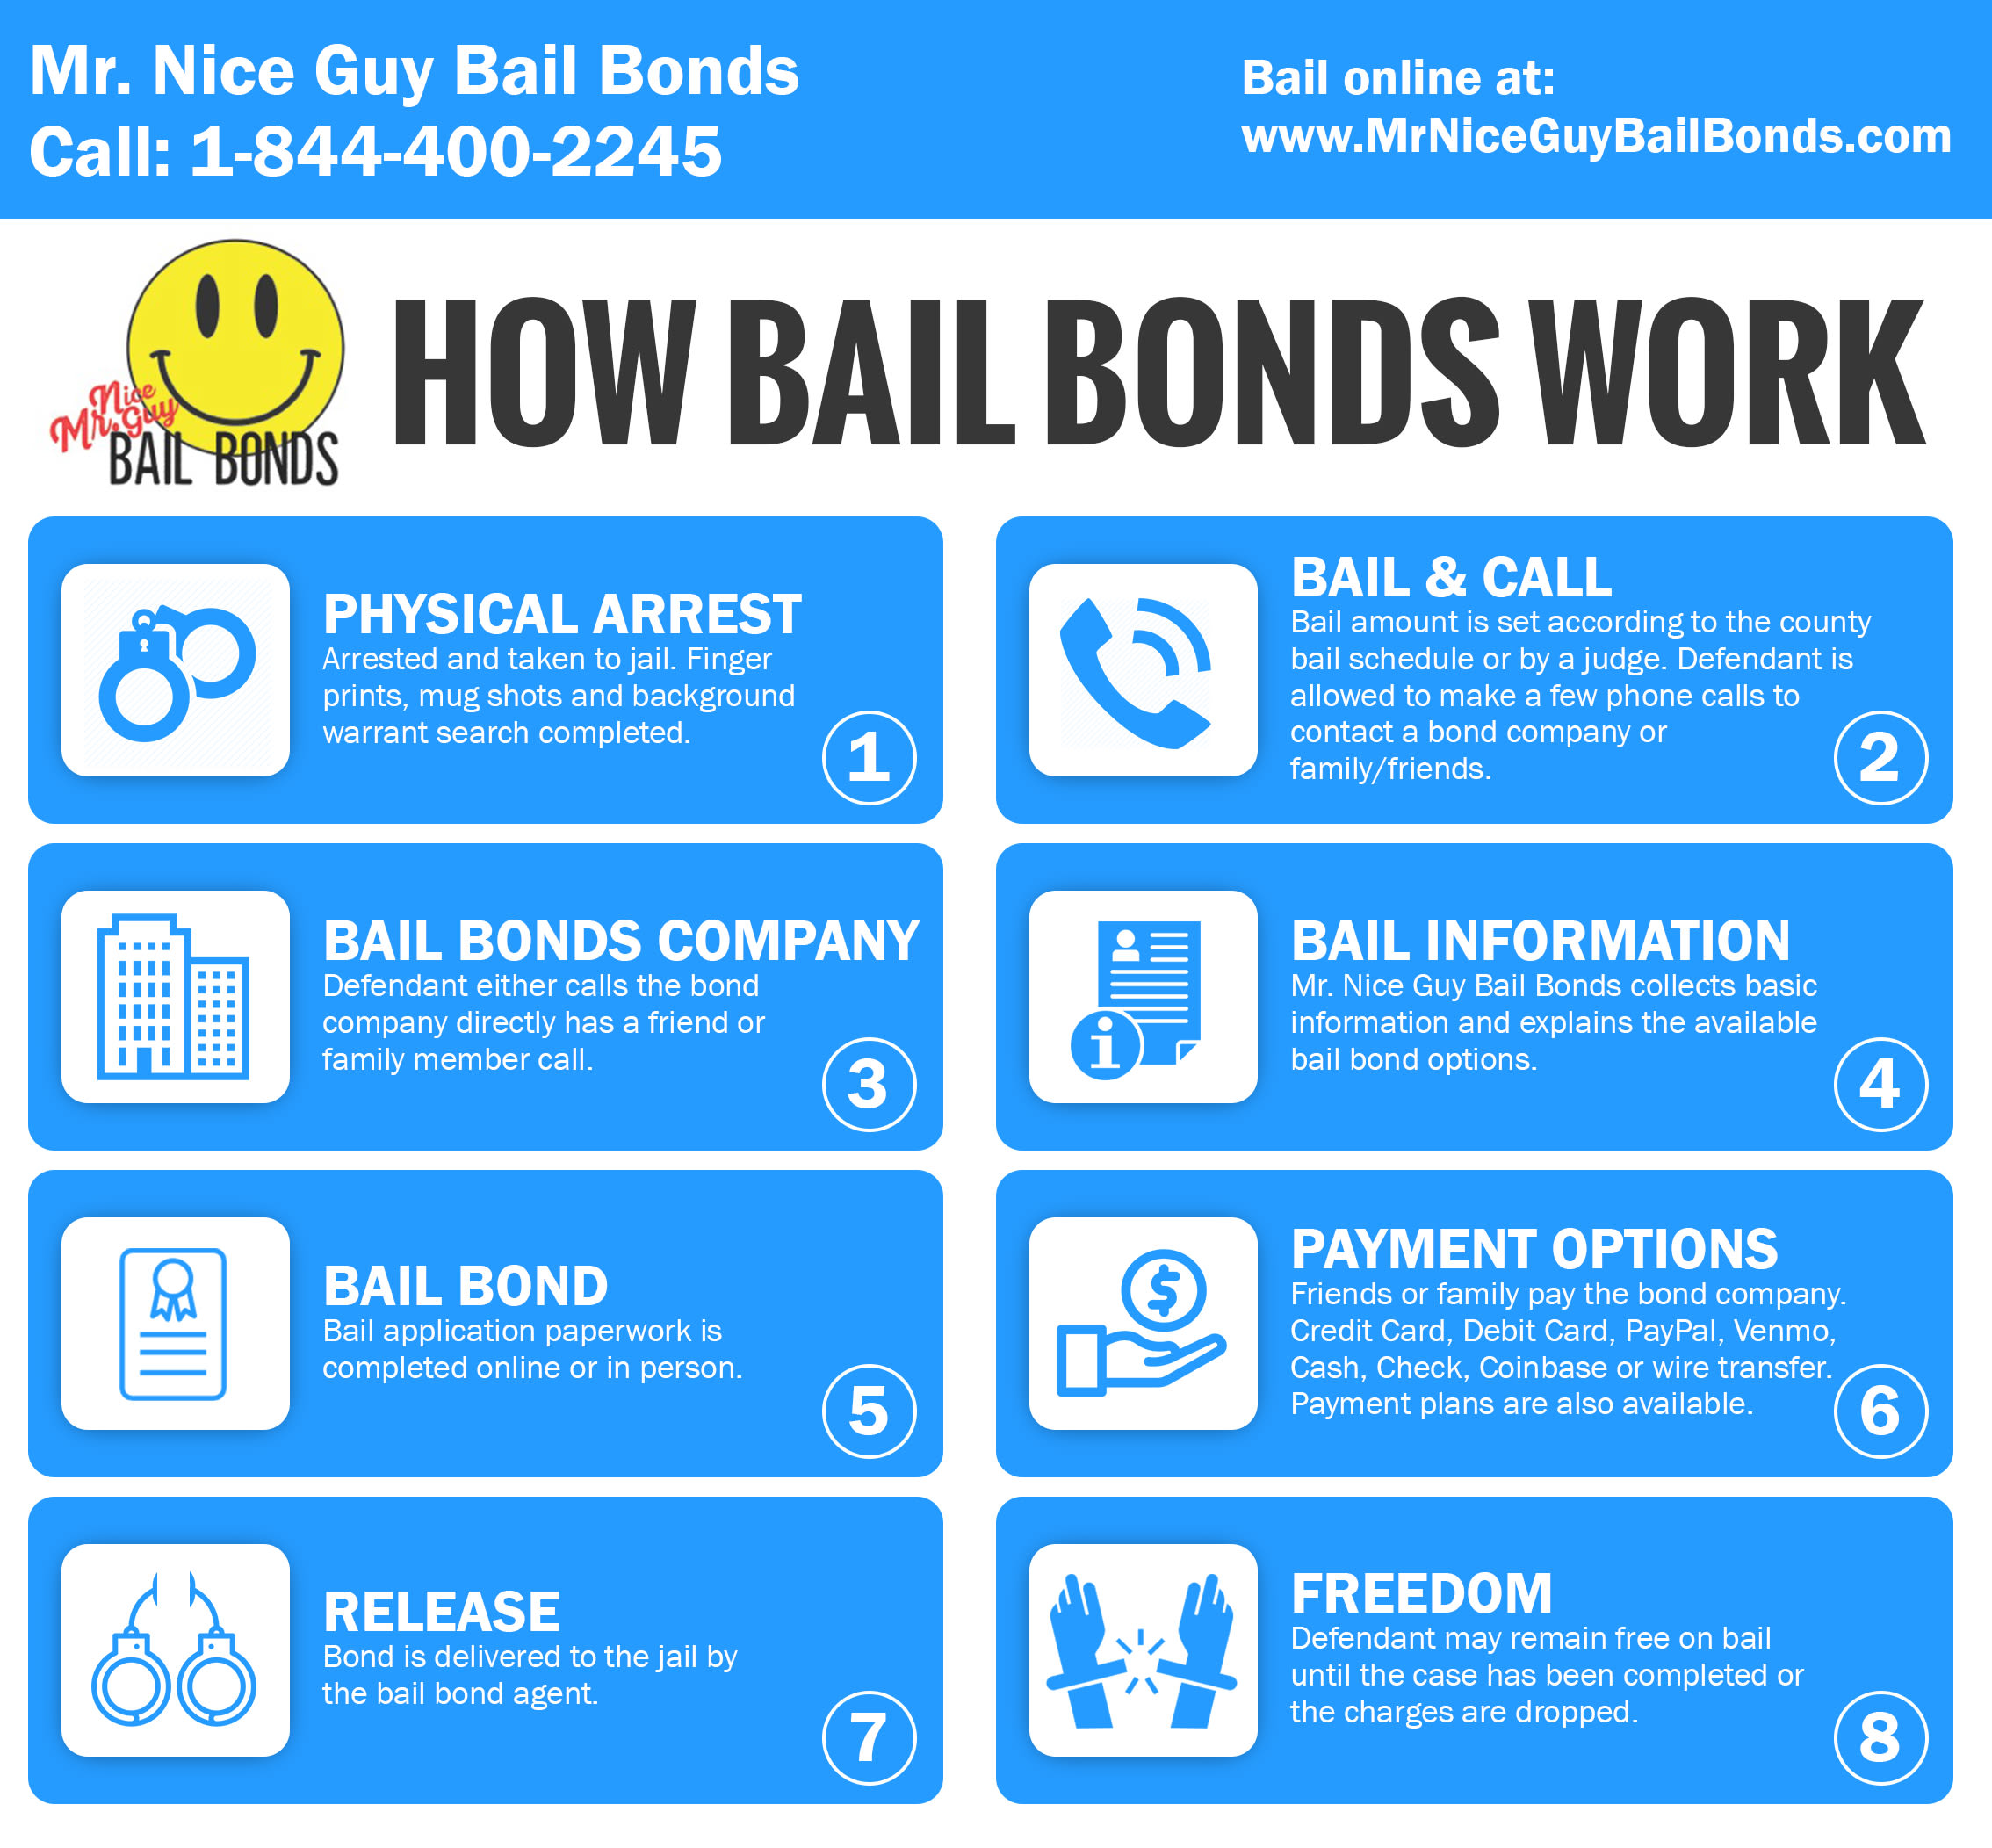 $500 Down Bail Bonds